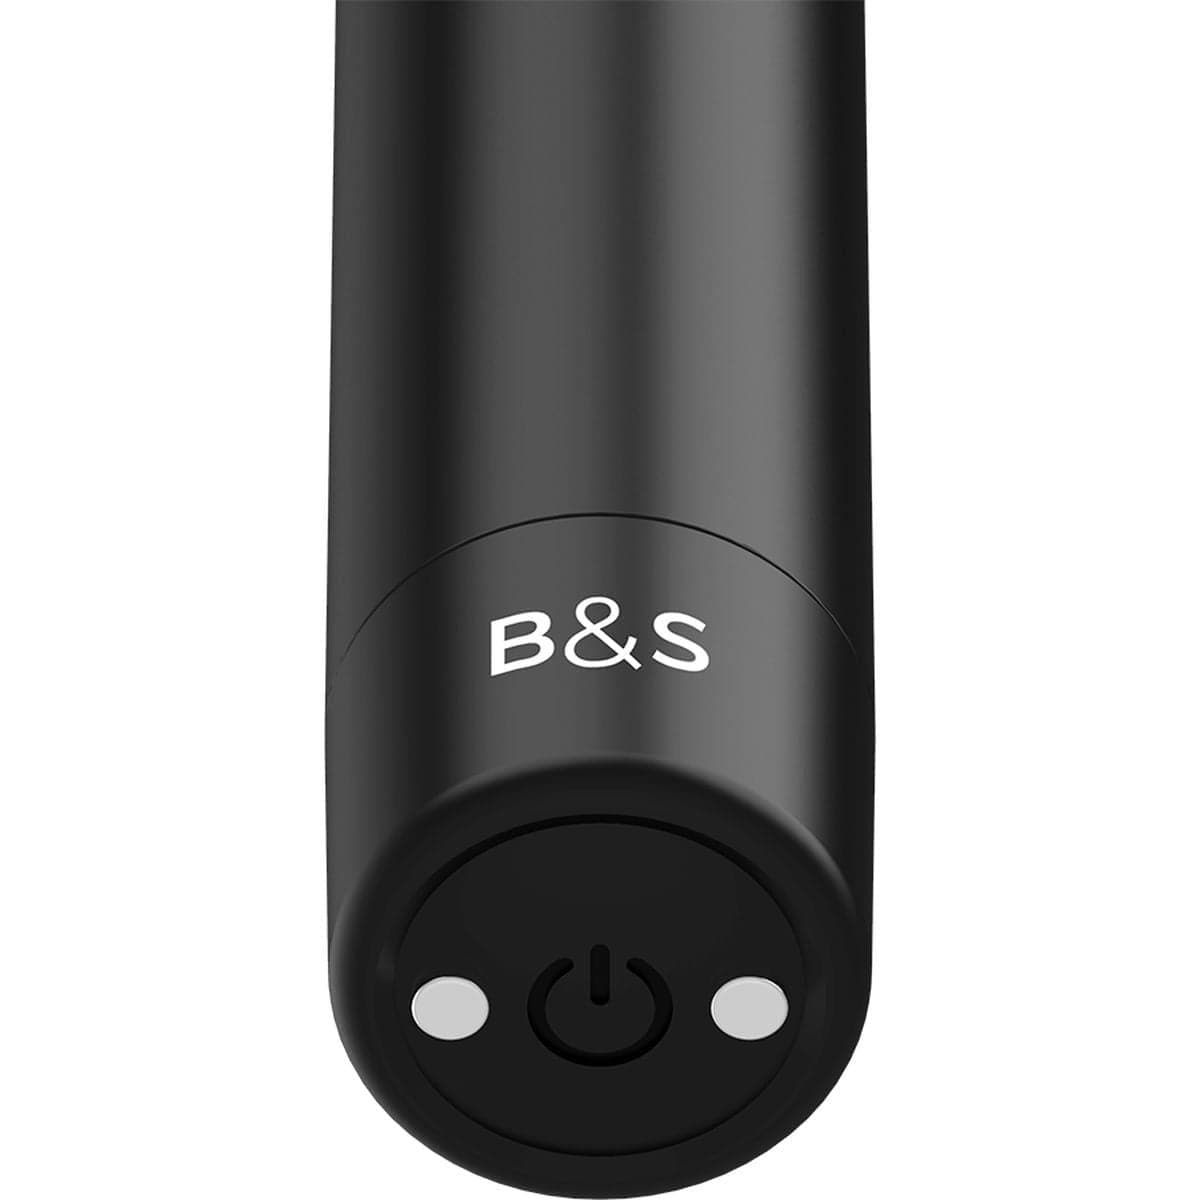 Bala Vibratória Kernex Recarregável USB Preto, 8.6cm Ø1.8cm, 10vibrações